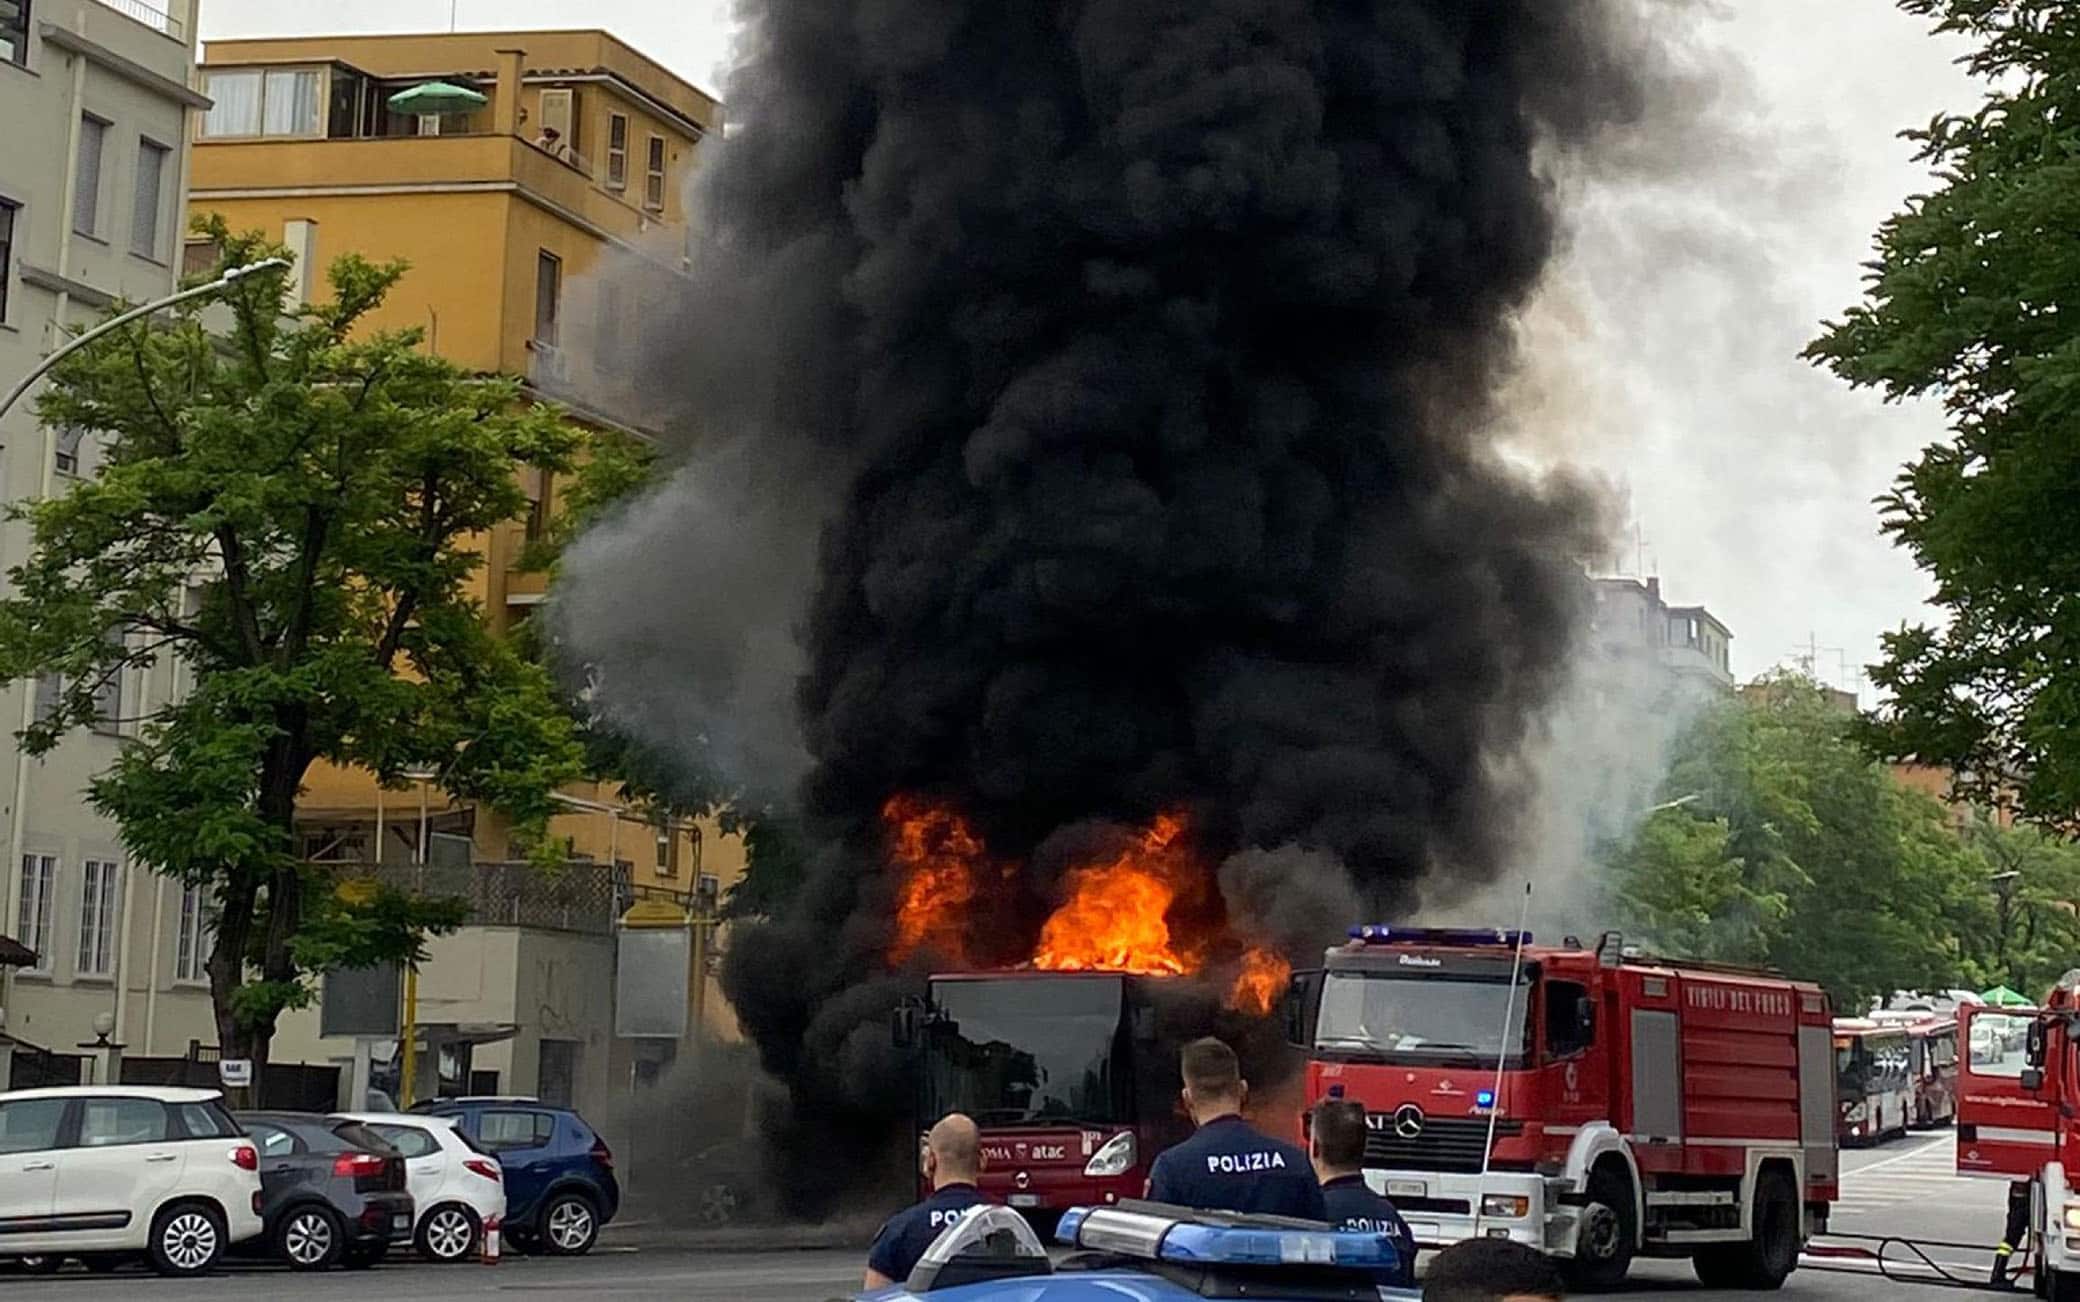 Autobus in fiamme su via Portuense vicino all'ospedale Spallanzani, Roma, 19 giugno 2021. ANSA/ETTORE FERRARI